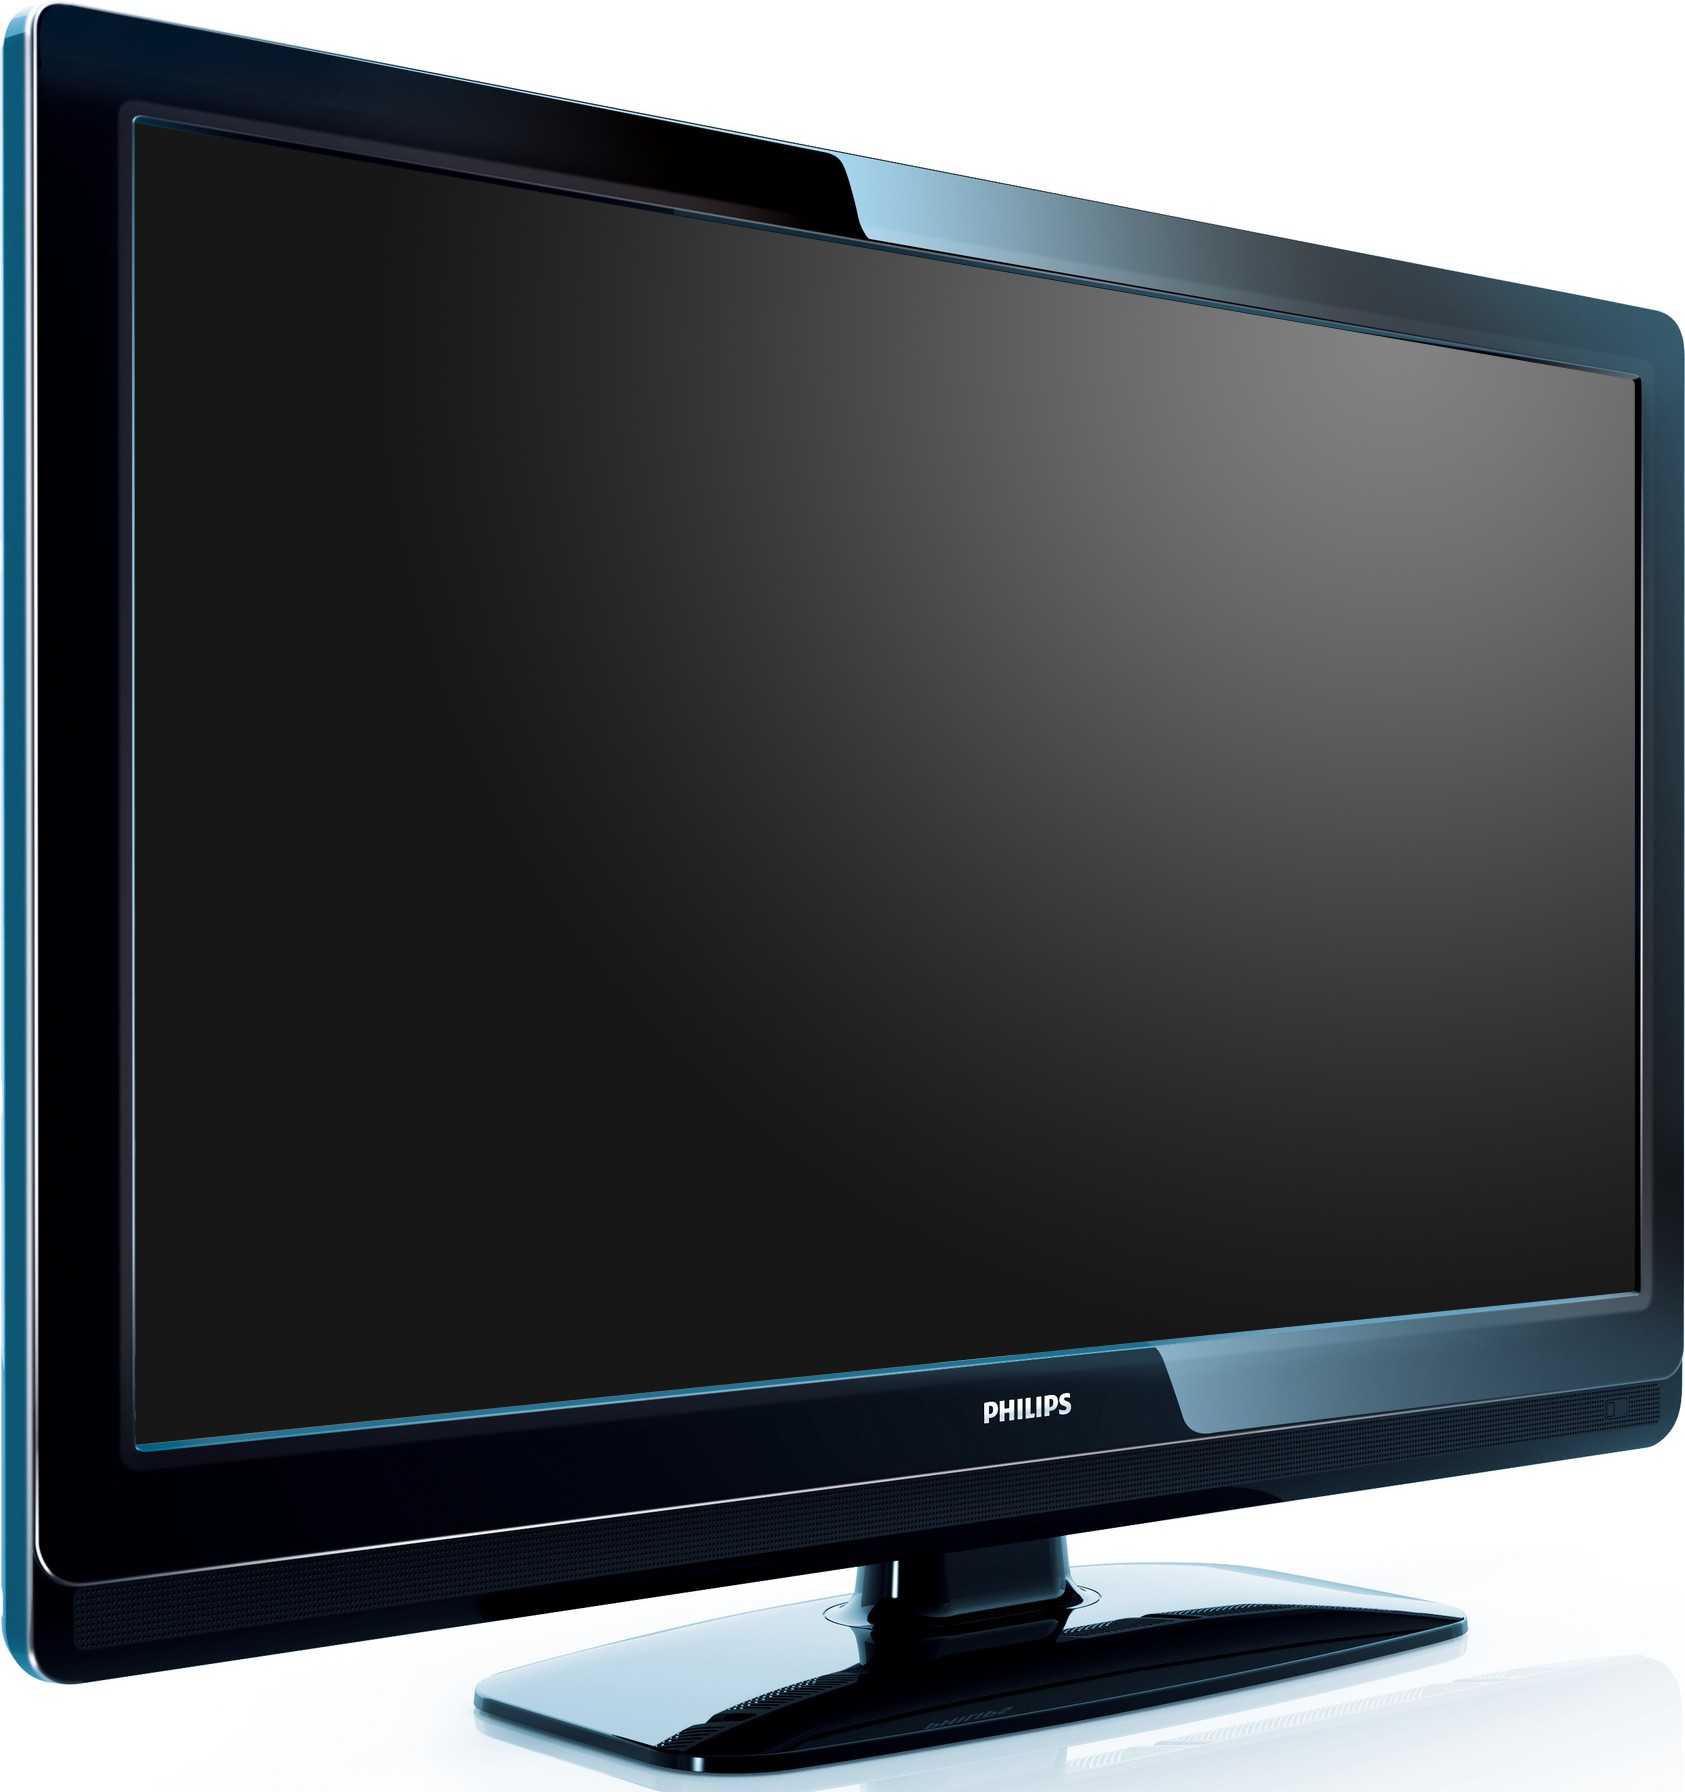 Philips 39pfl4208k - купить , скидки, цена, отзывы, обзор, характеристики - телевизоры